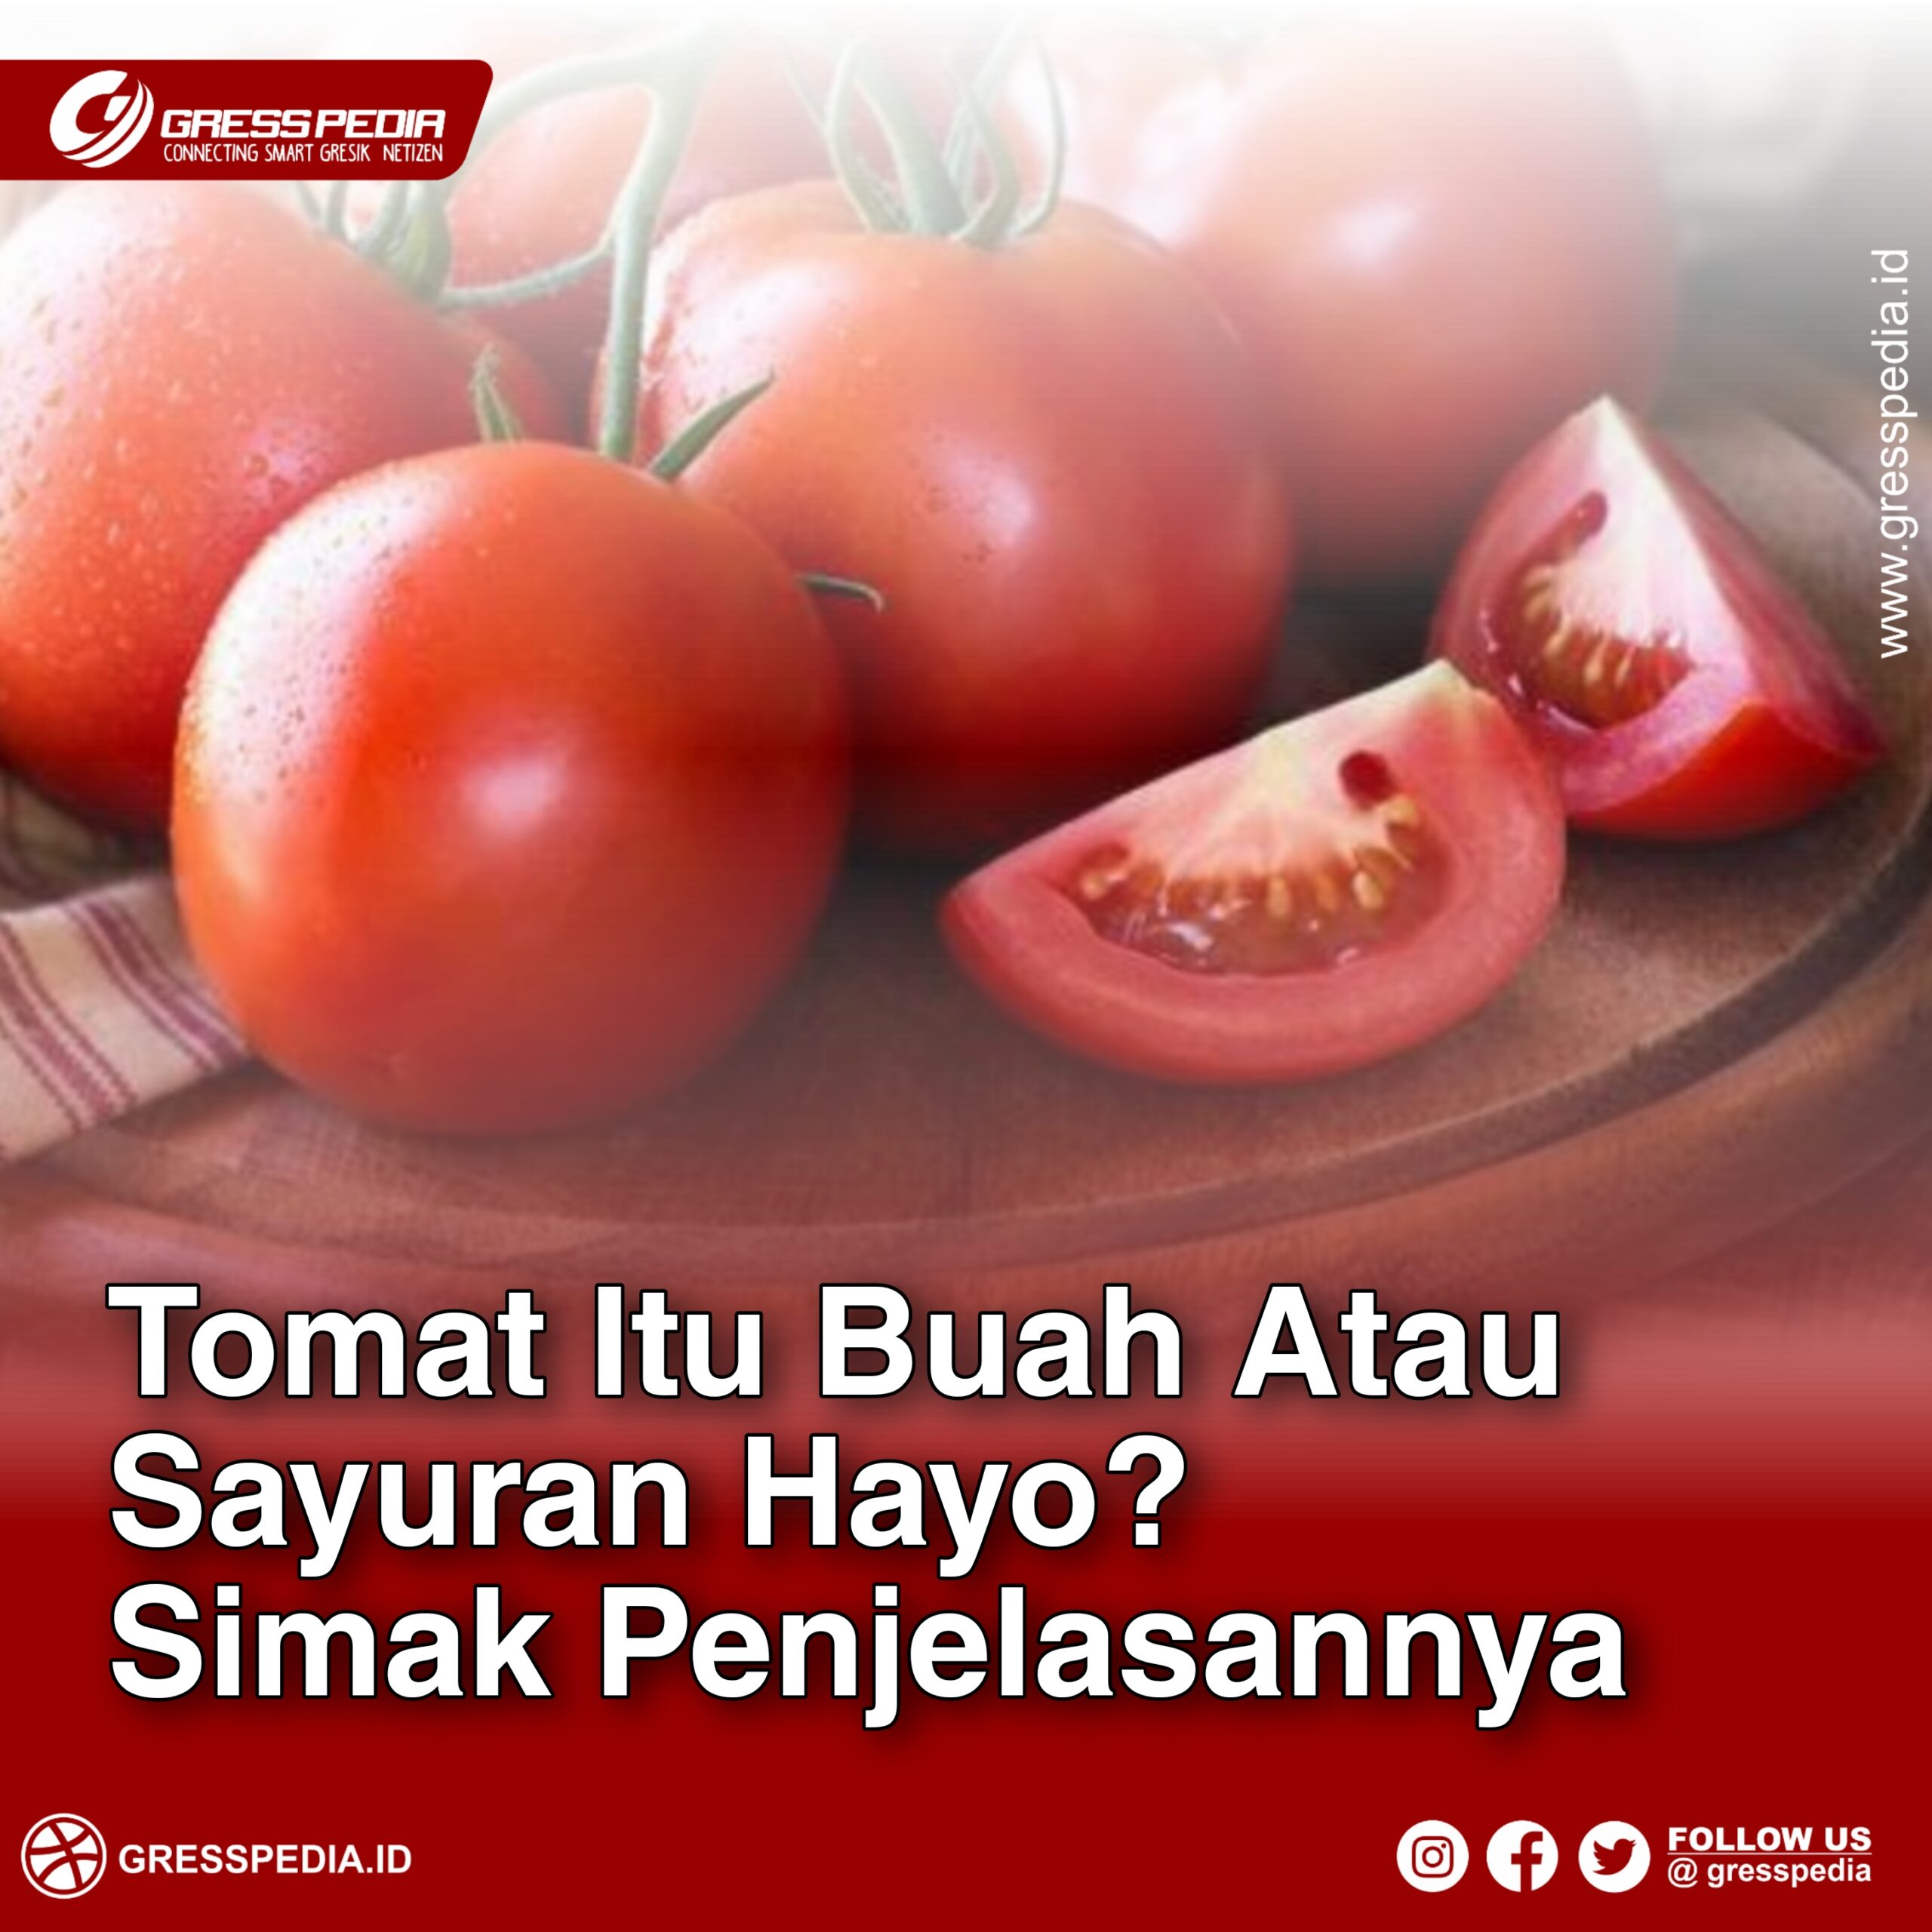 Tomat Itu Buah Atau Sayuran Hayo? Simak Penjelasannya